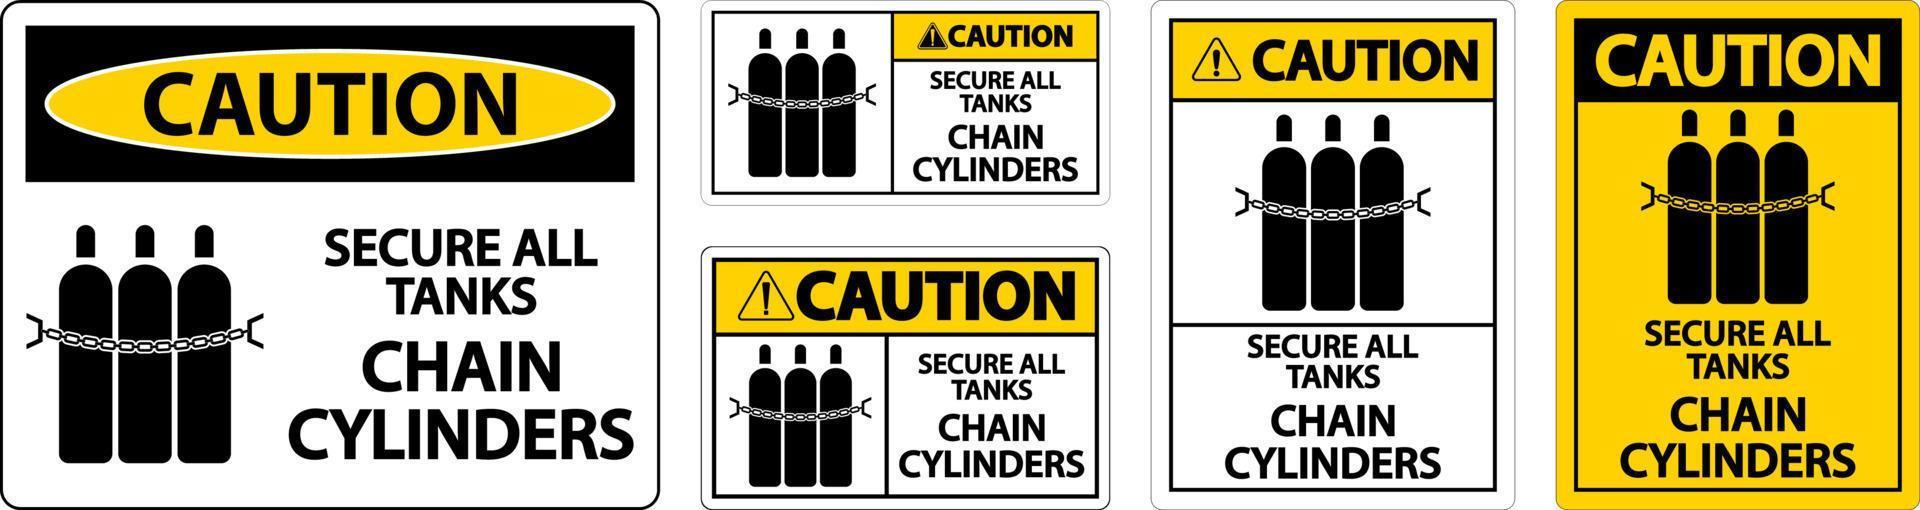 varning tecken säkra Allt tankar, kedja cylindrar vektor